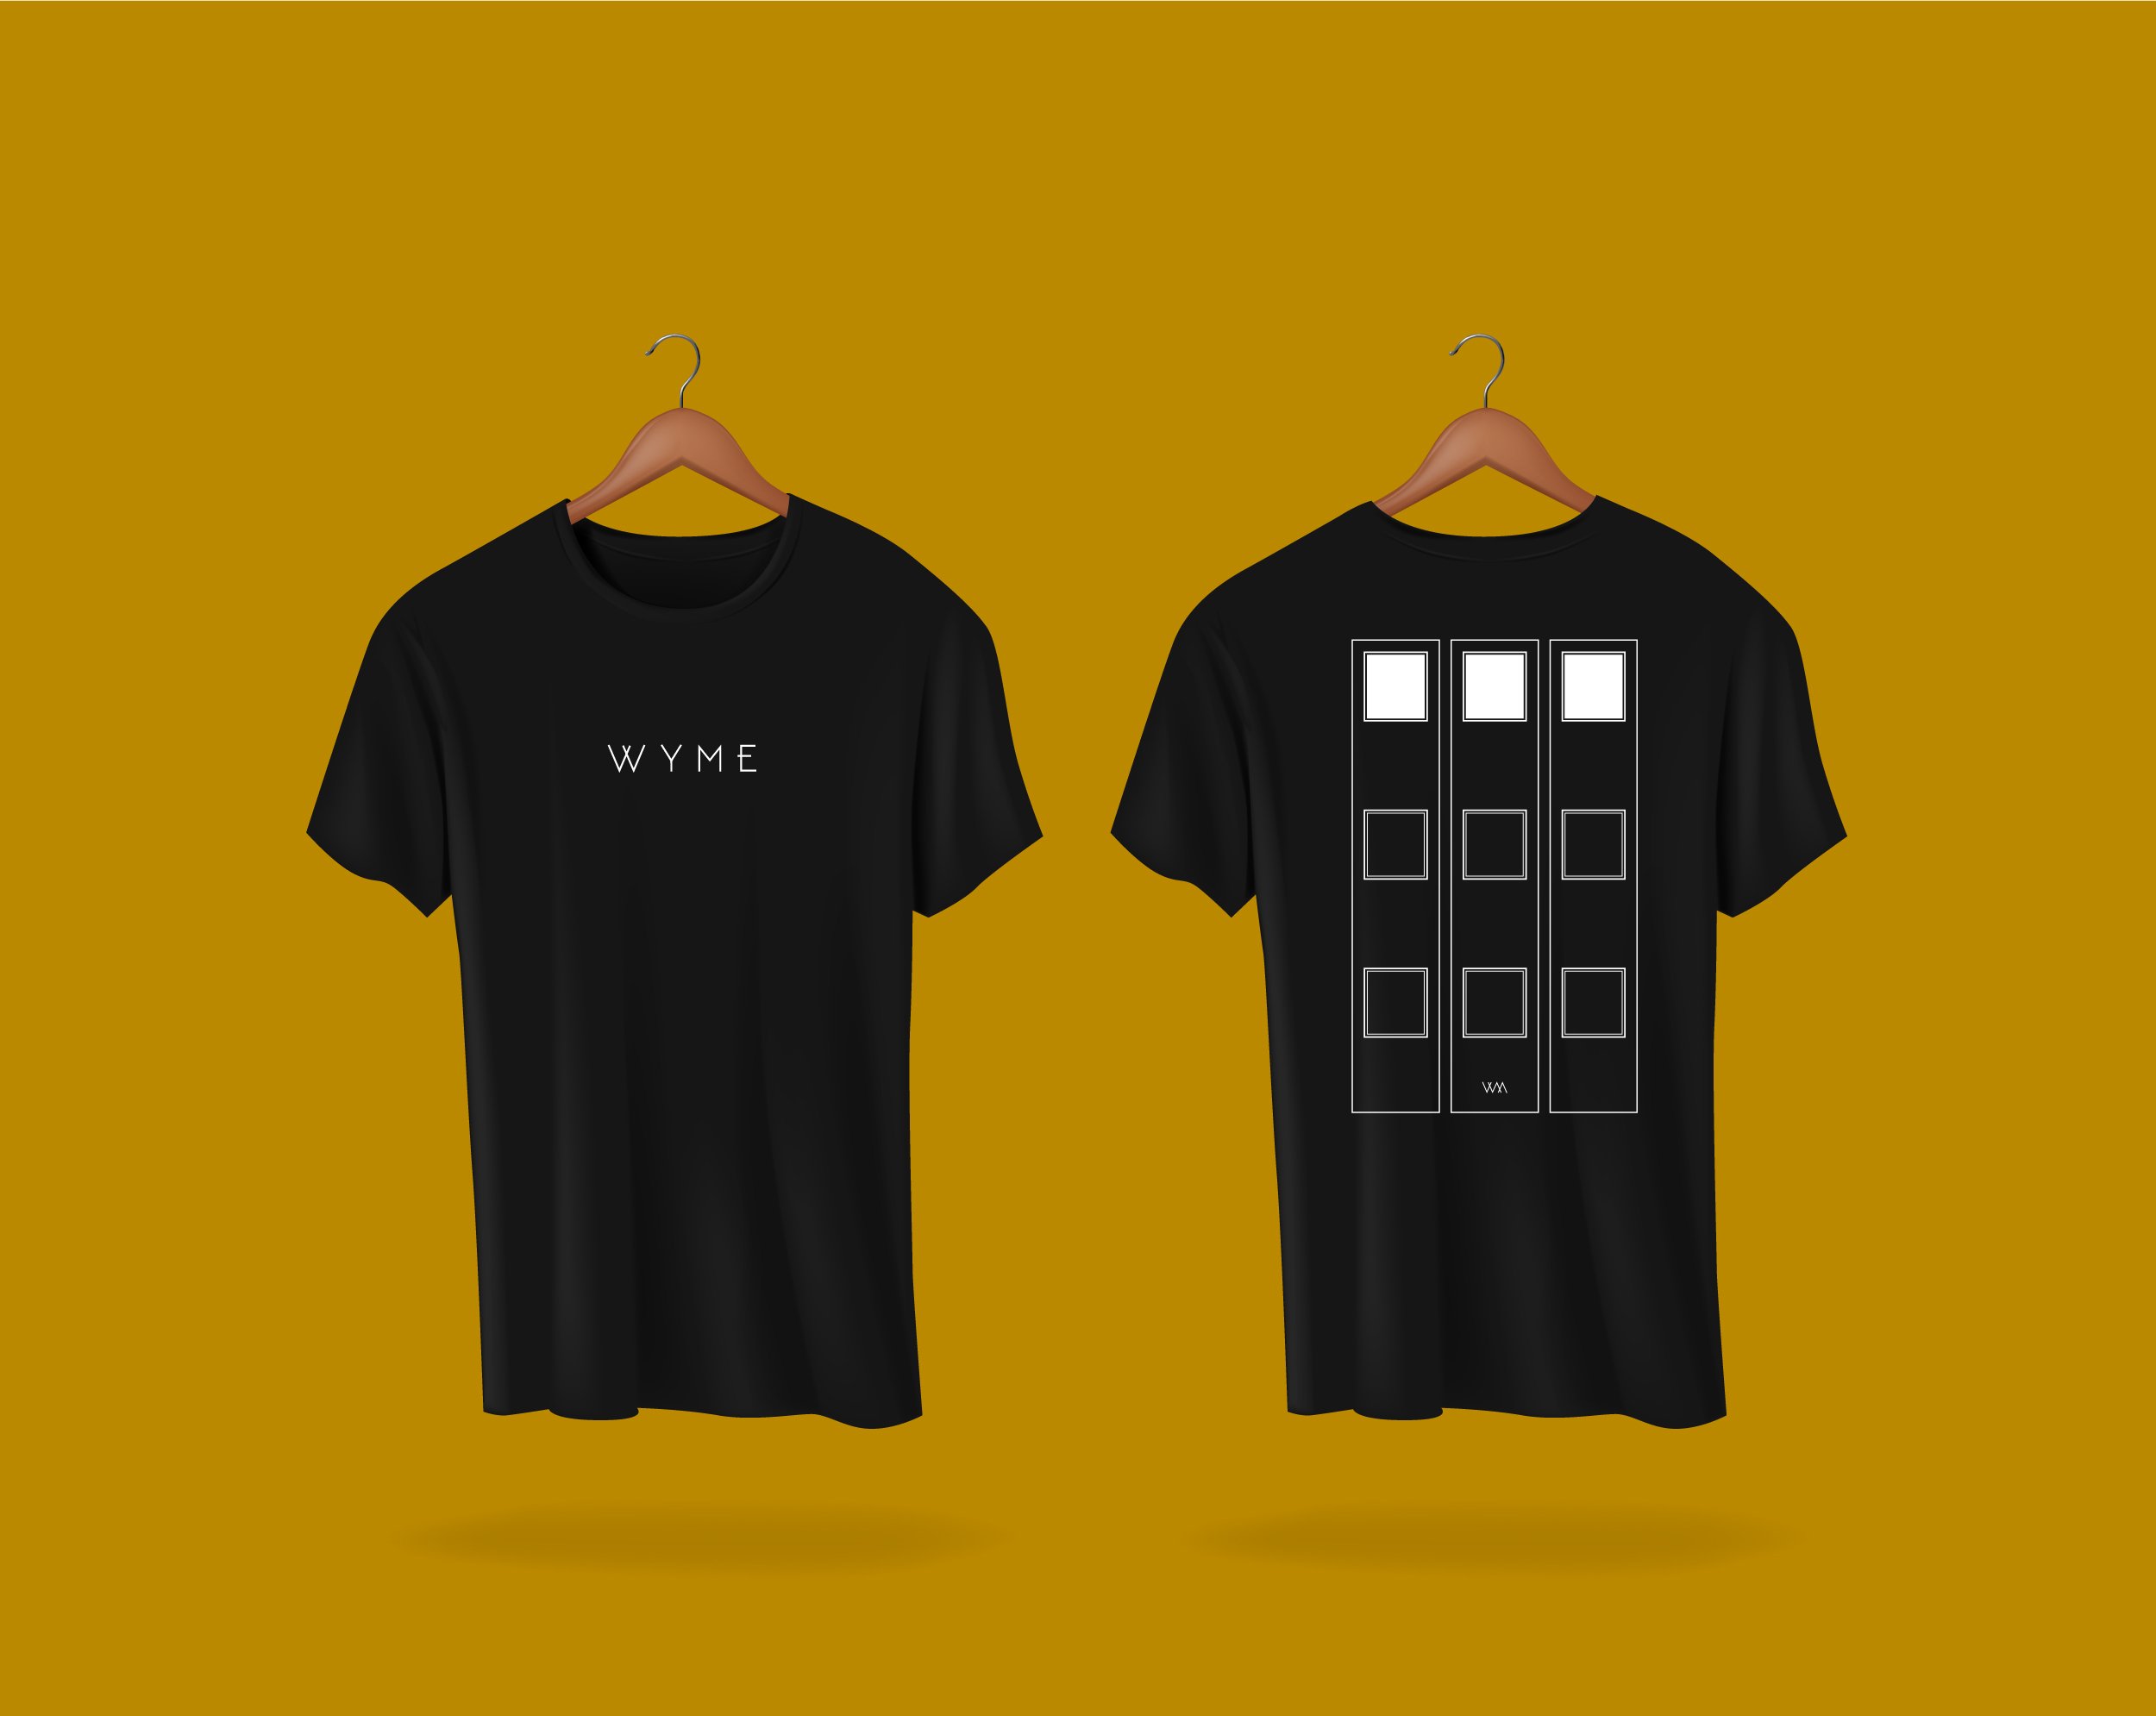 WYME - Shirt - BG.jpg